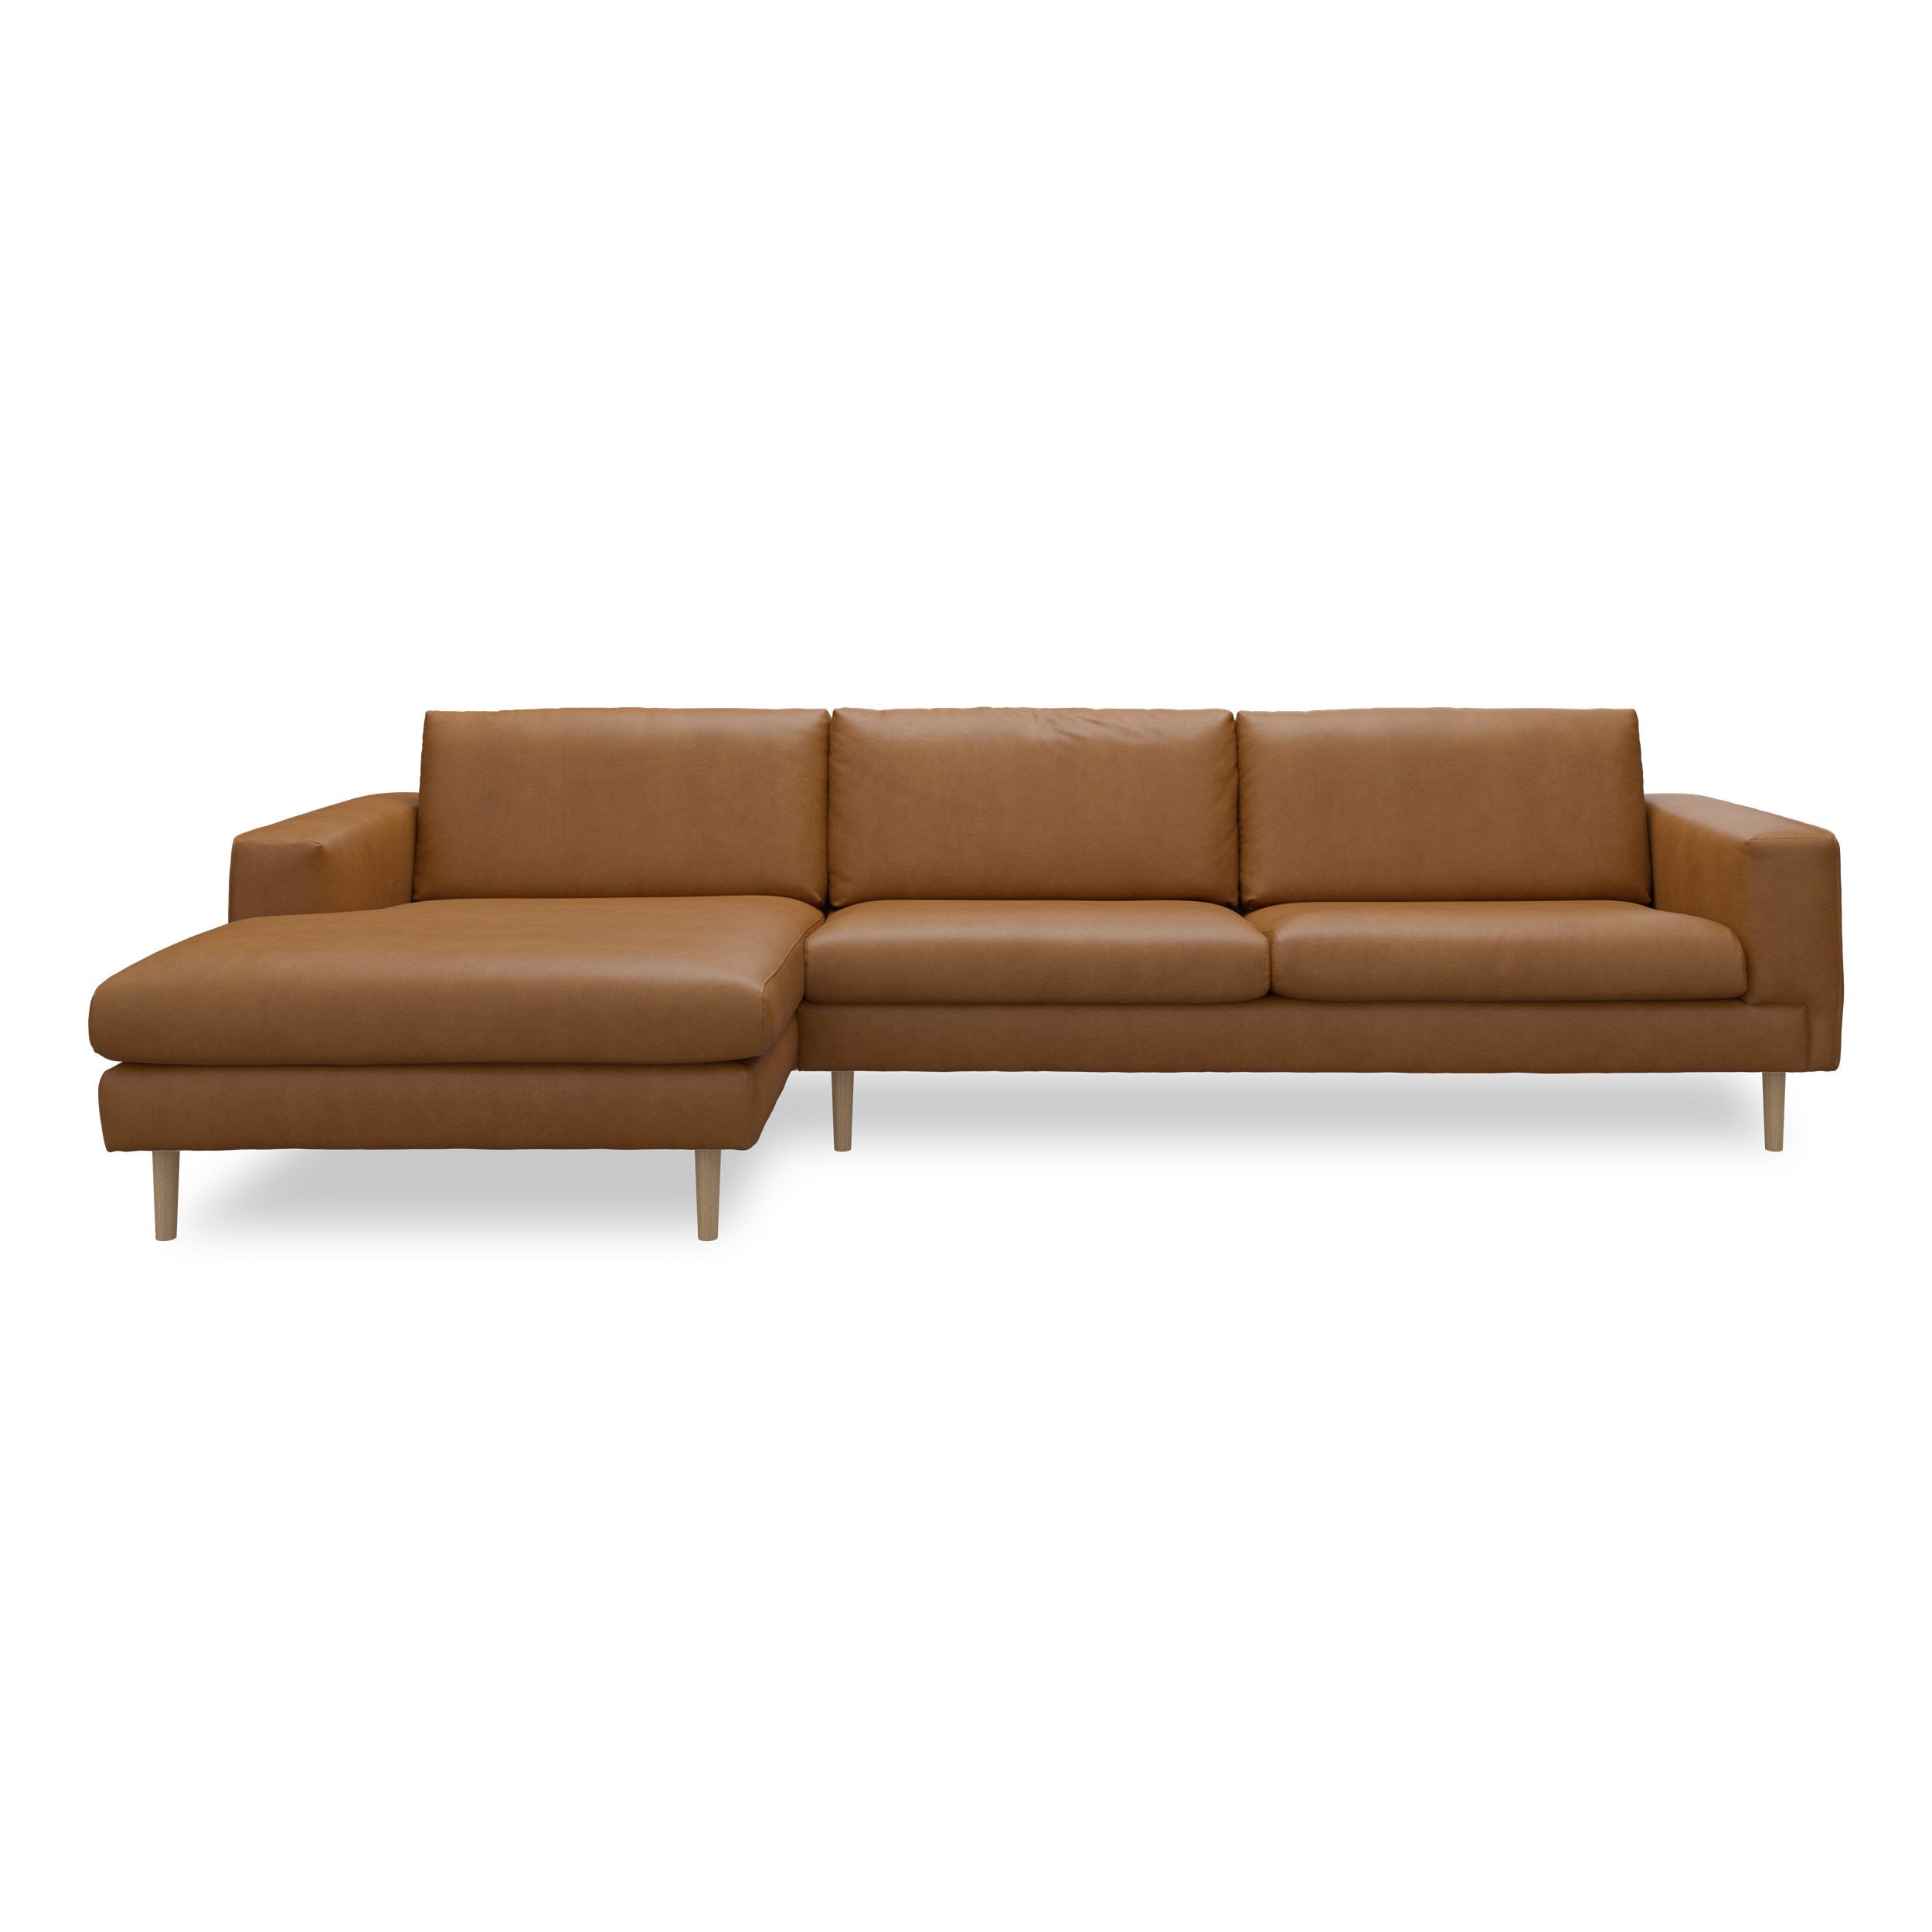 Nyland venstrevendt sofa med chaiselong - Kentucky 9 cognac bonded læder, Ben no. 141 i lakeret massiv eg og S: Koldskum R:Koldskum med fiberfyld